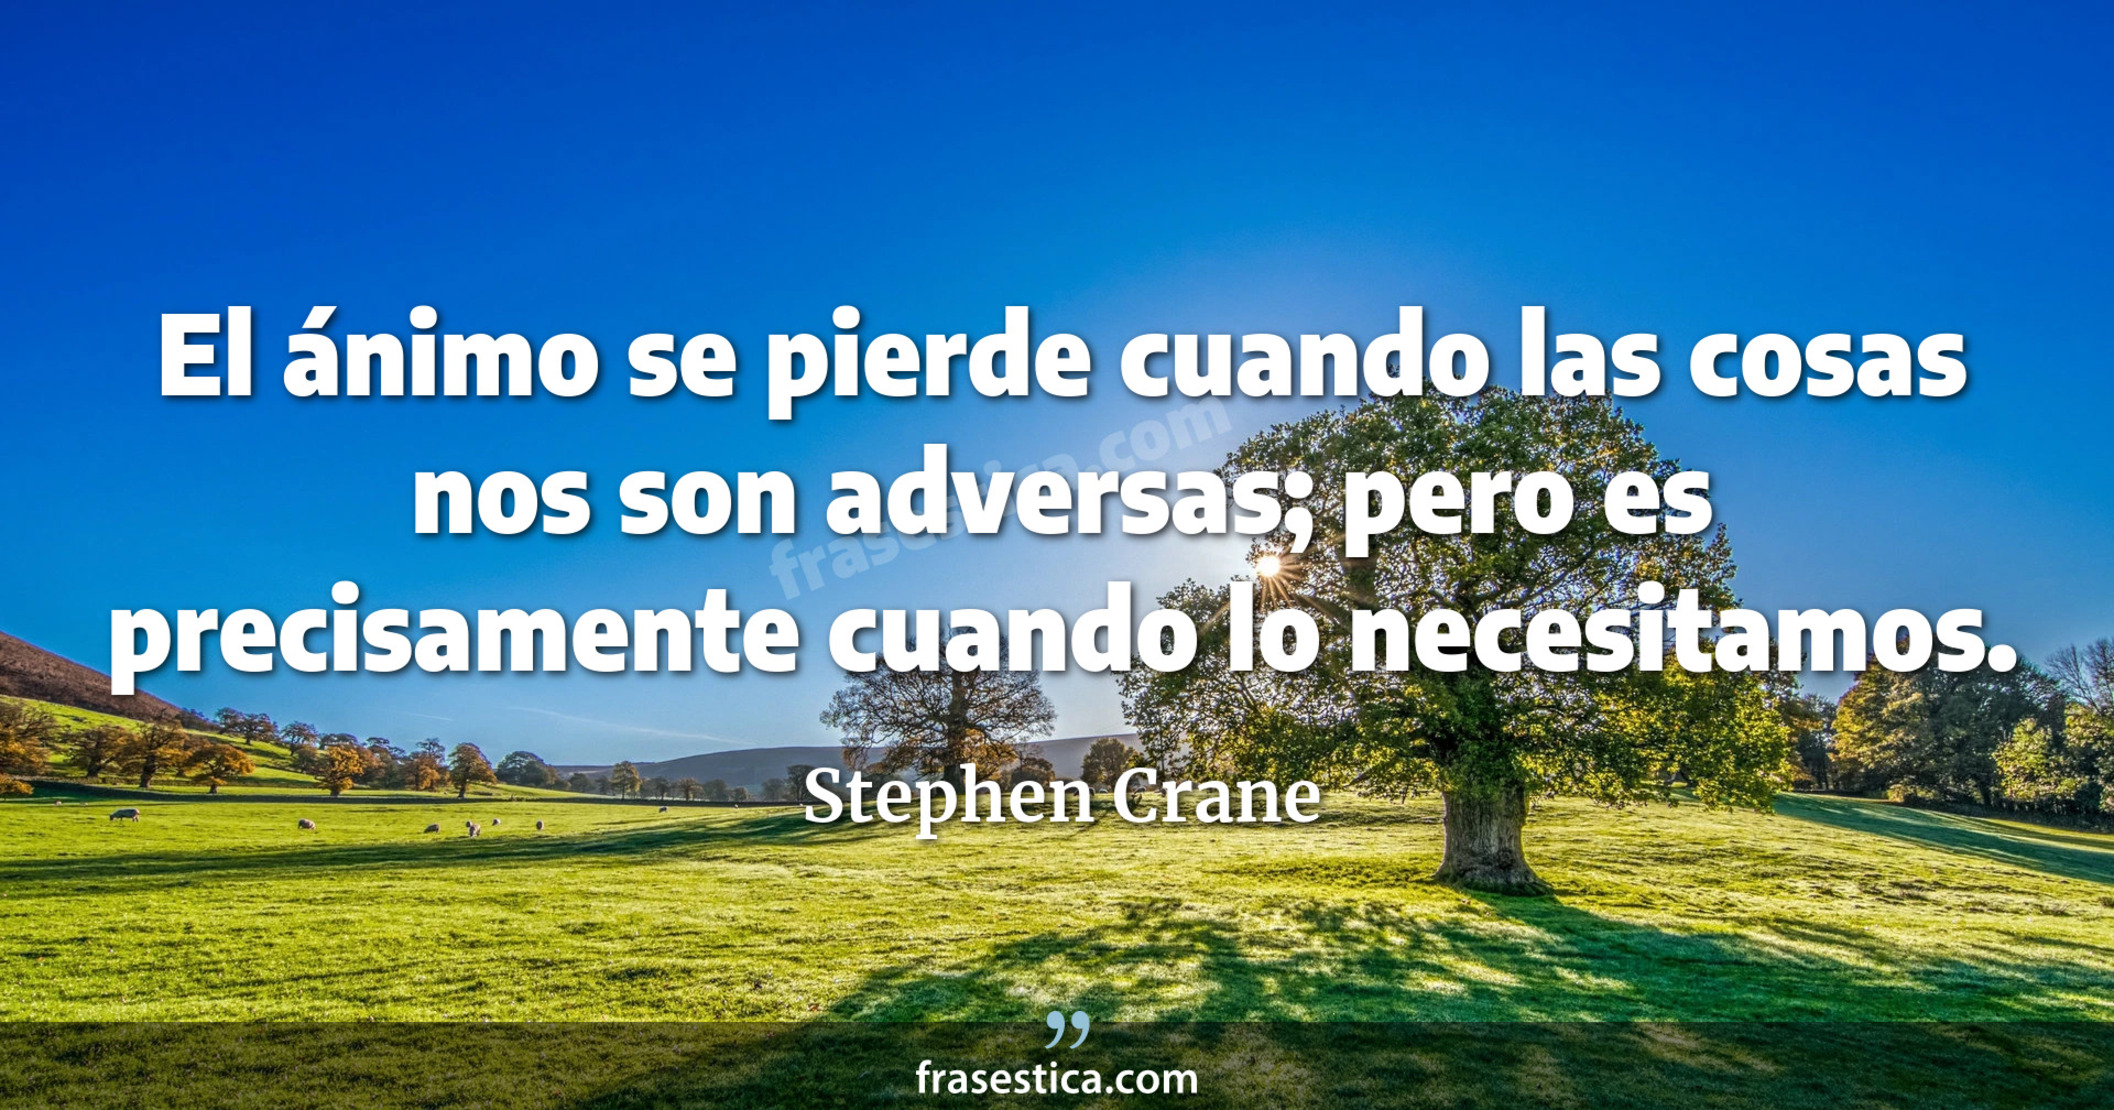 El ánimo se pierde cuando las cosas nos son adversas; pero es precisamente cuando lo necesitamos. - Stephen Crane